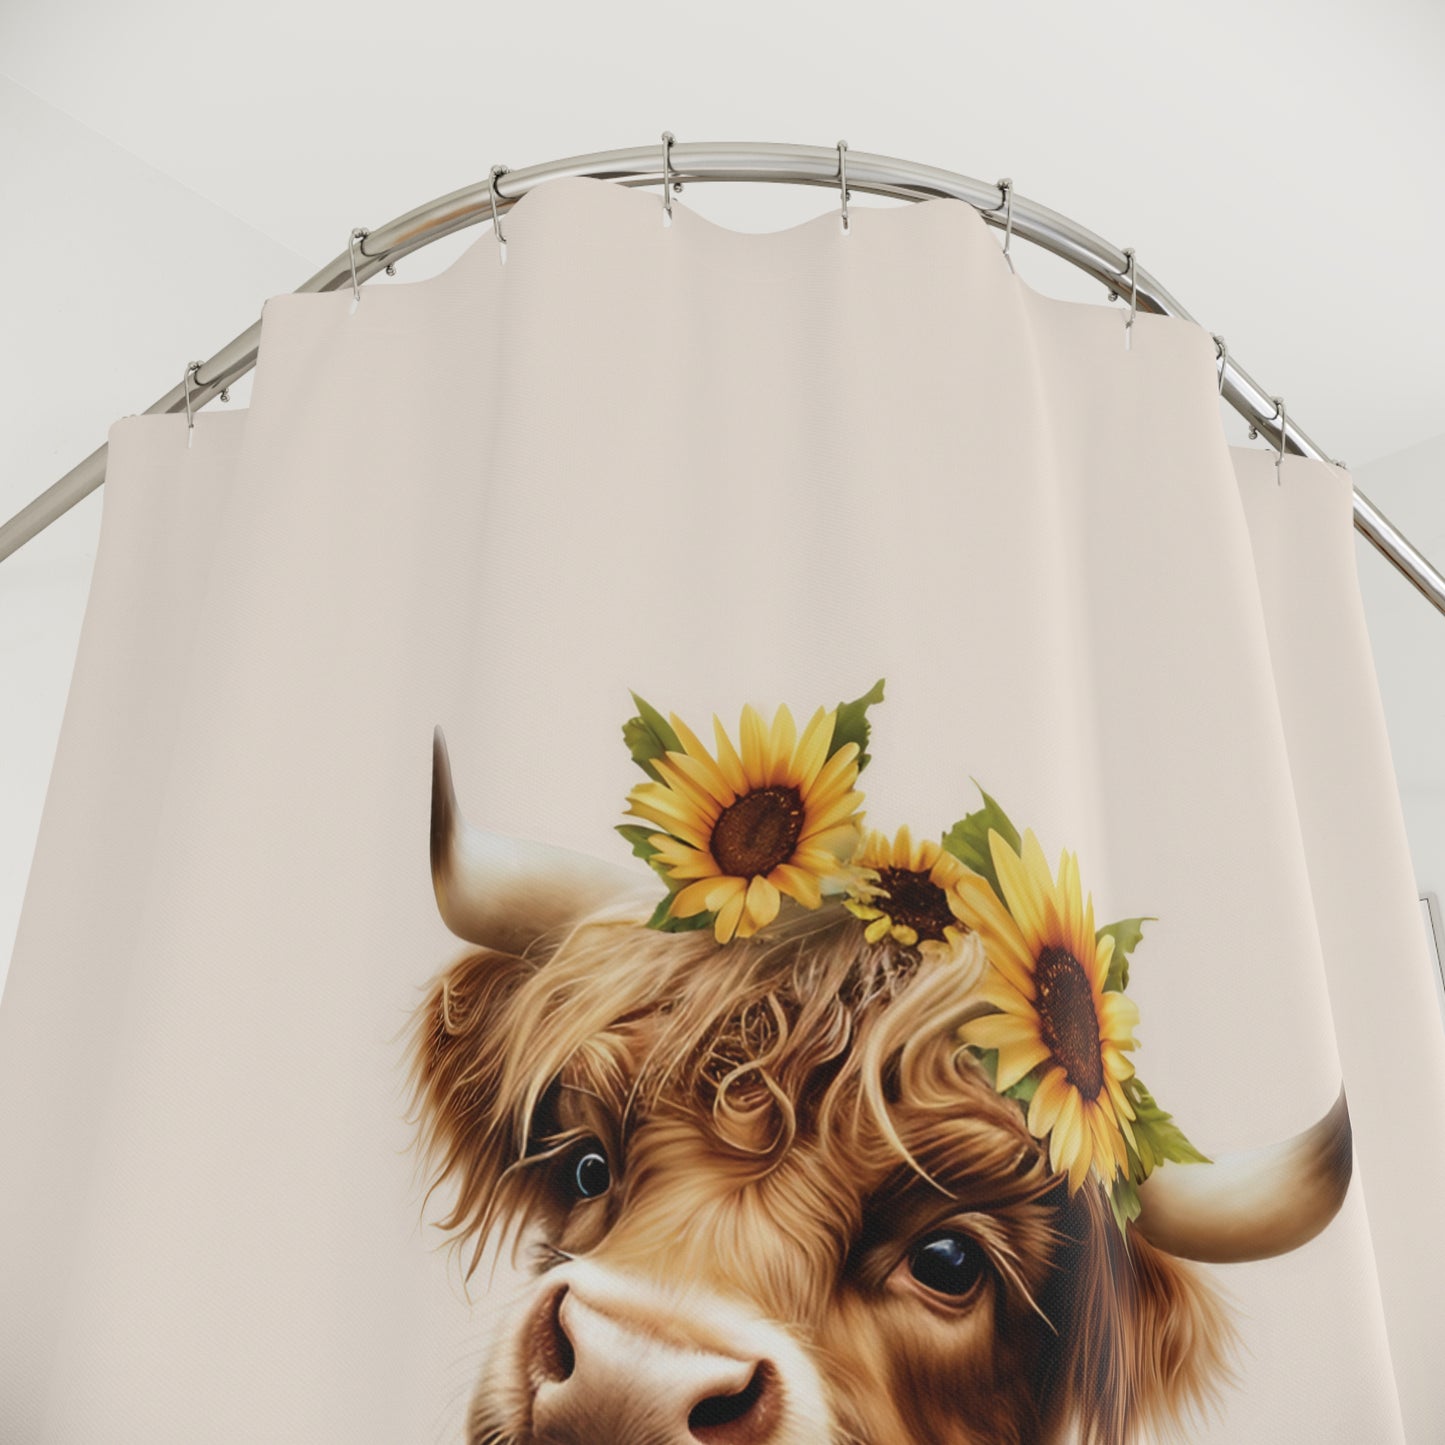 Adorable Highland Baby Cow Sunflowers Shower Curtain Farmhouse Bathroom Decor